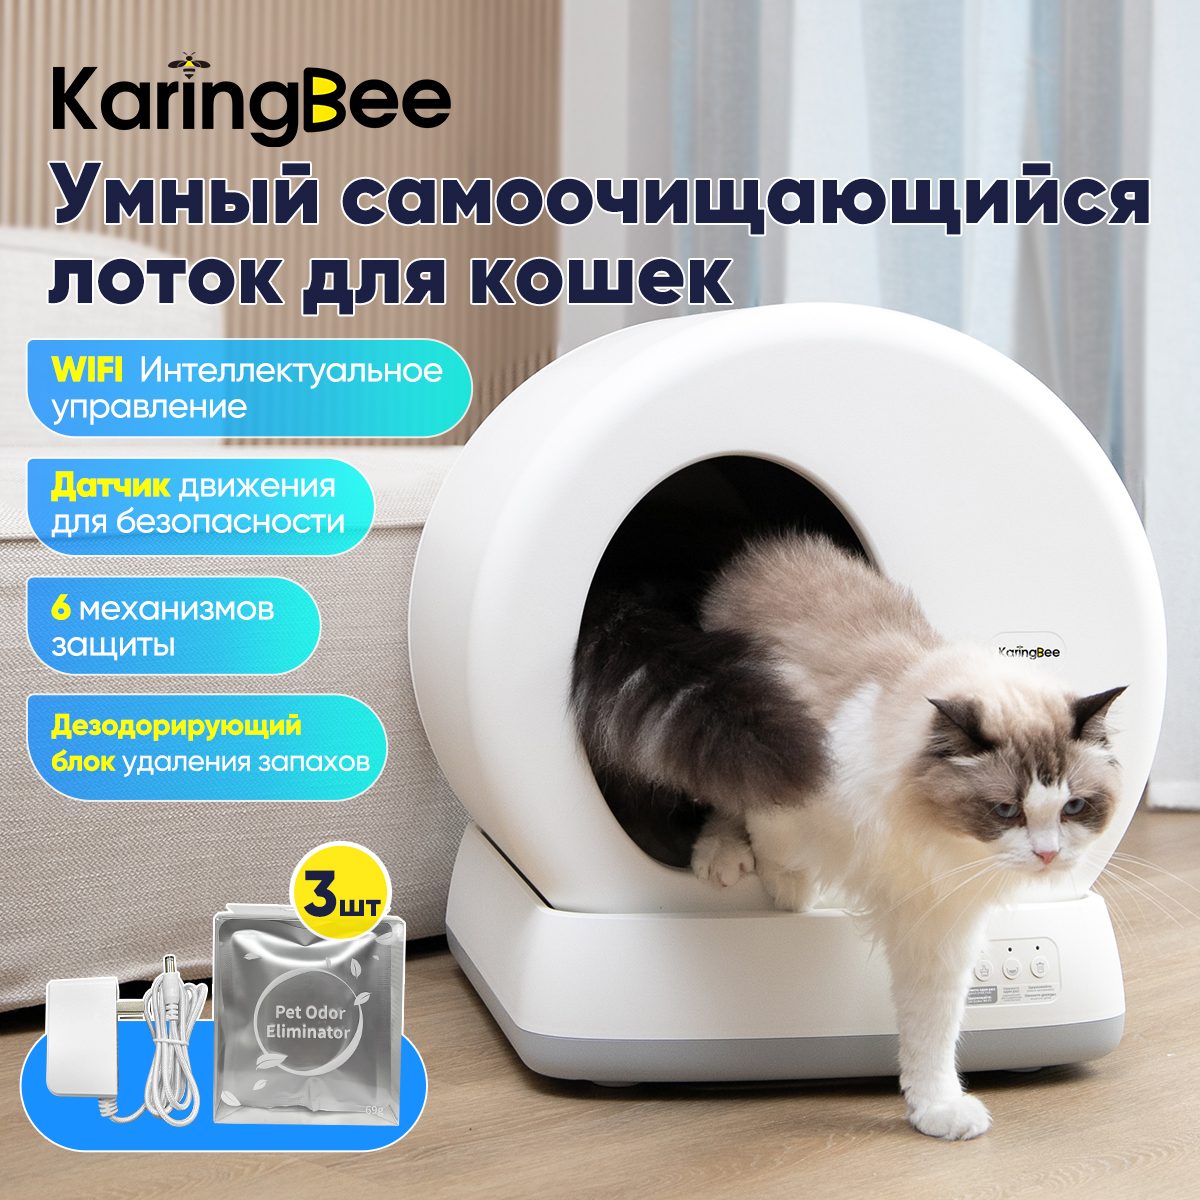 Автоматический туалет для кошек KaringBee C10, Wi-Fi, белый, ABS-пластик, 52x53x55,5 см